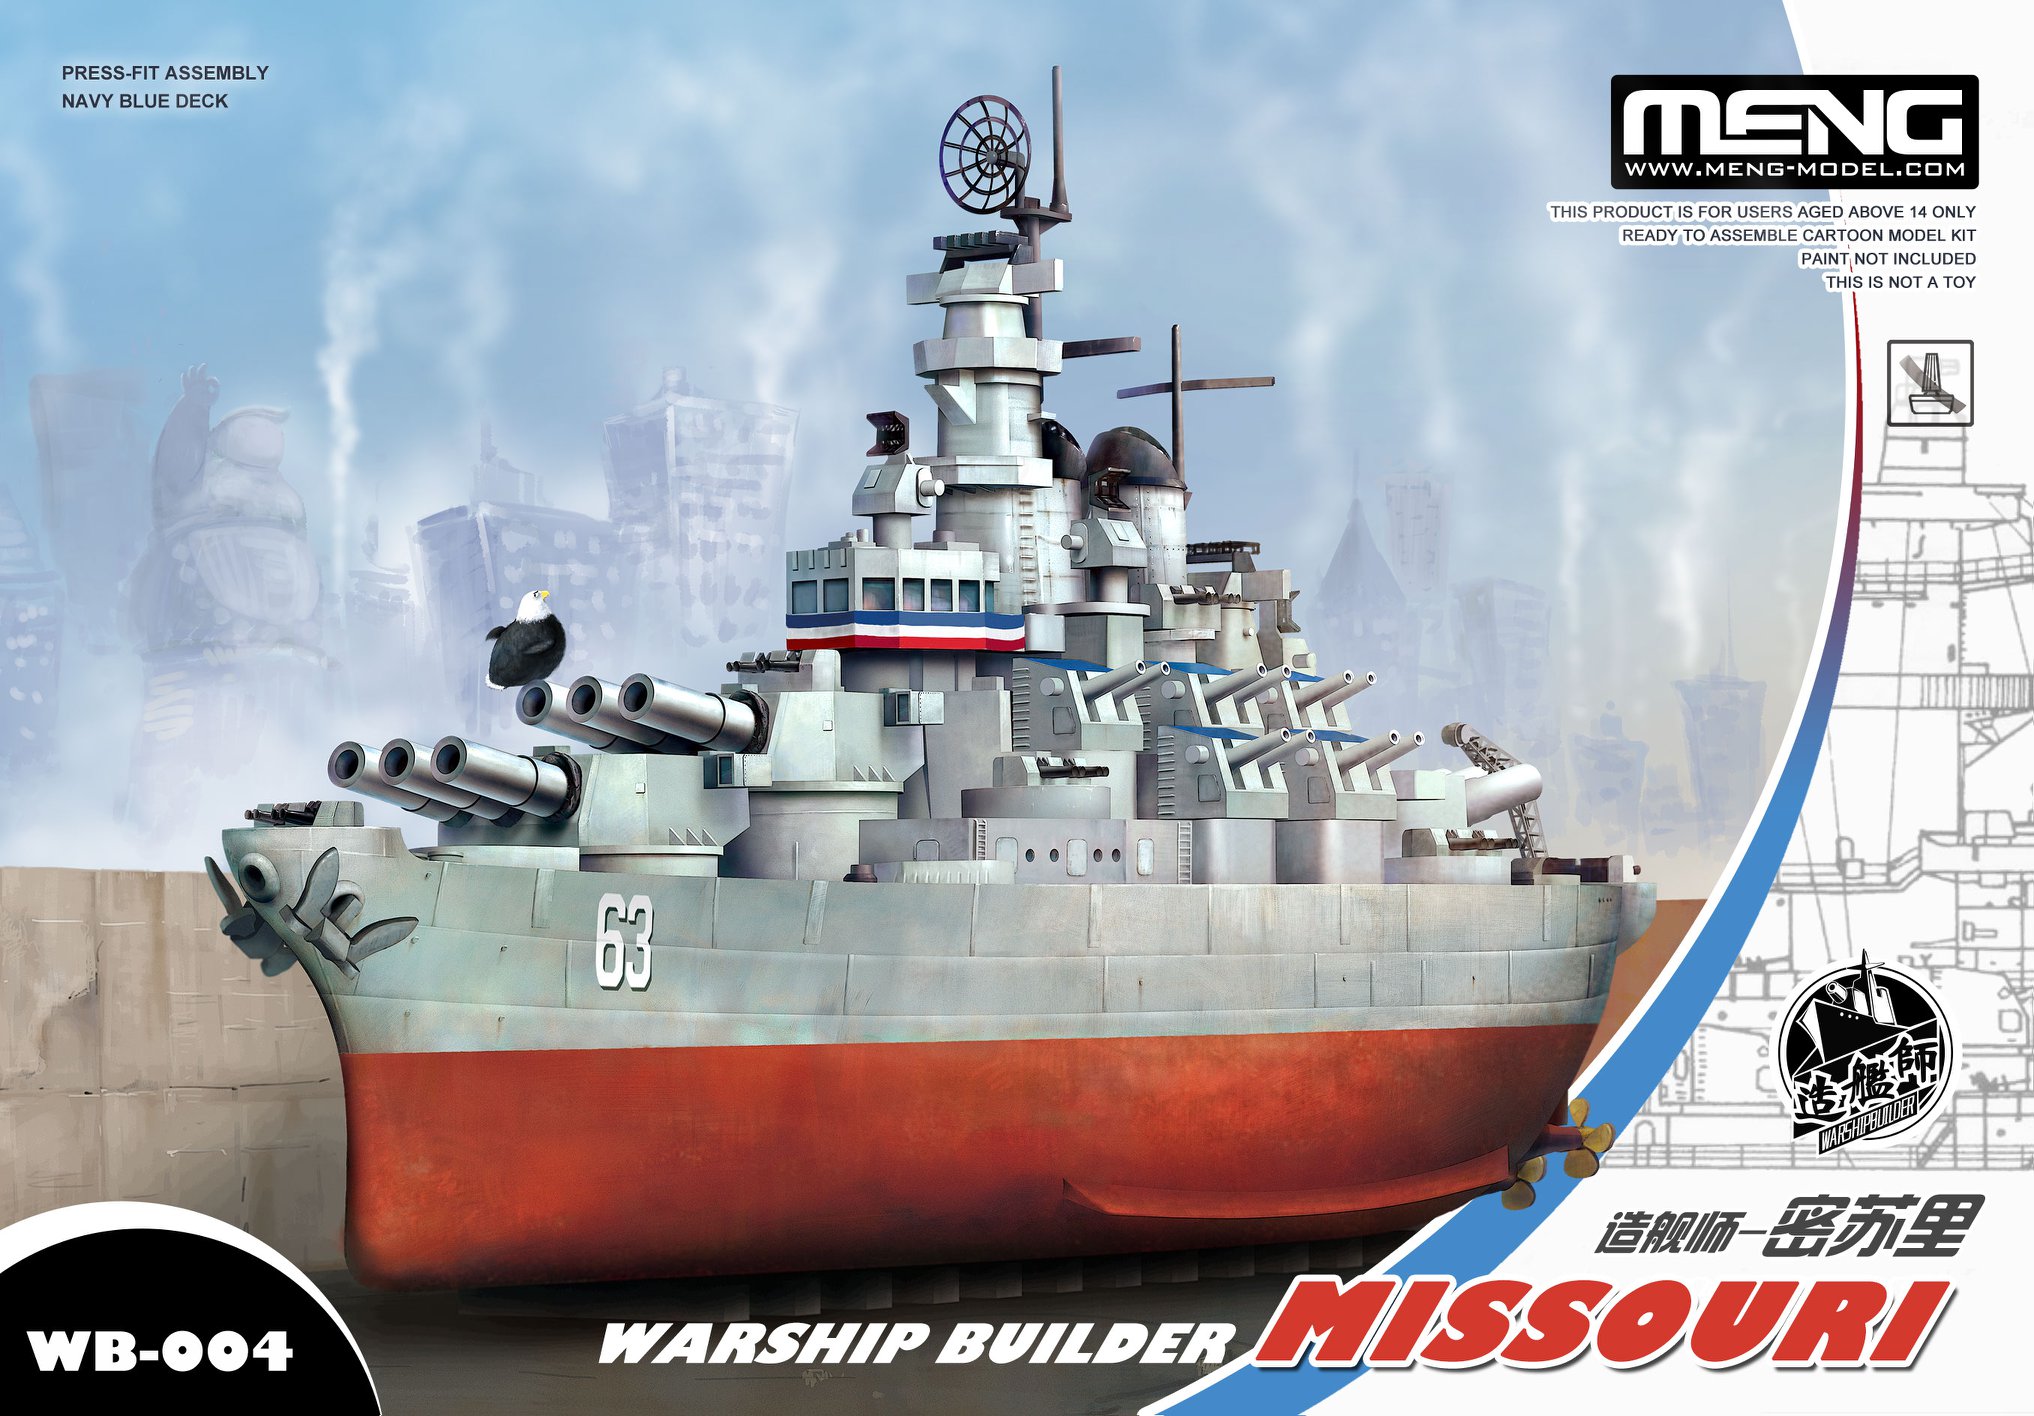 Warship Builder - Missouri (Cartoon model)